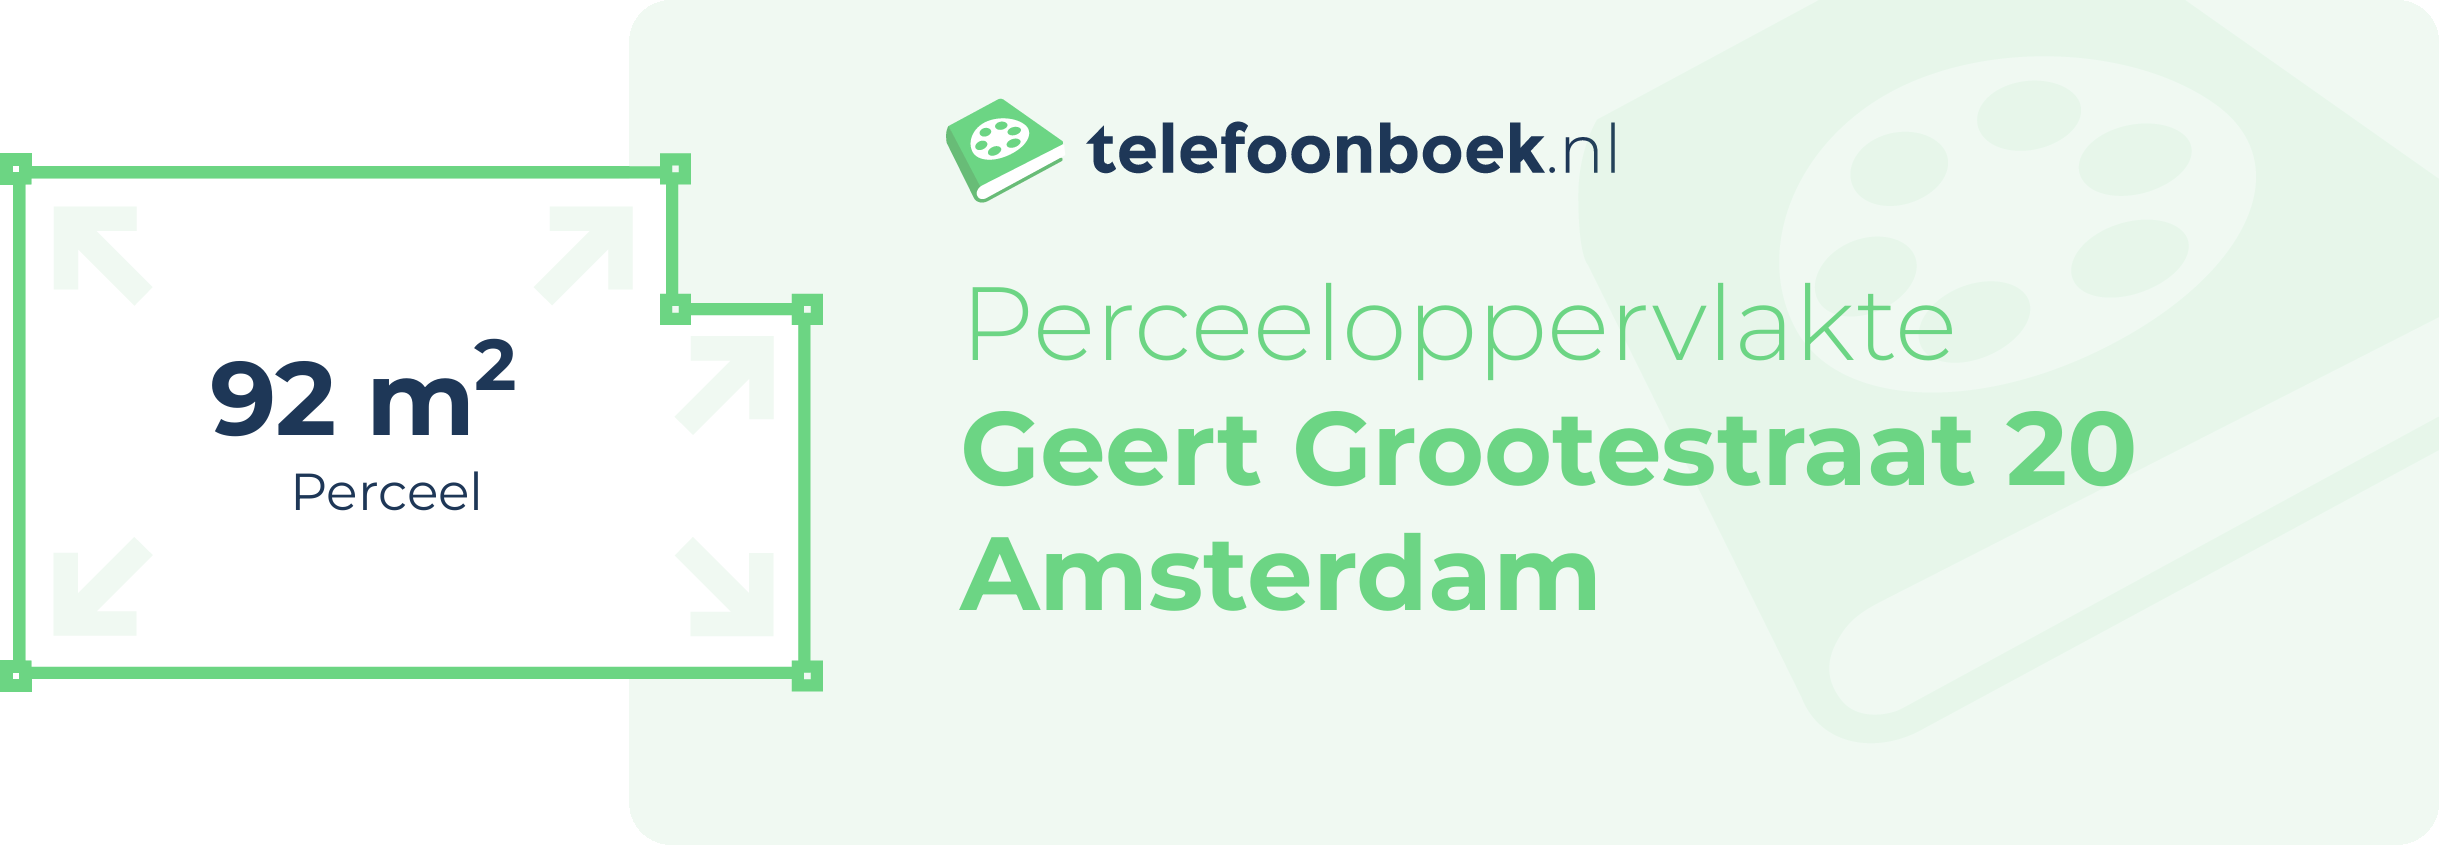 Perceeloppervlakte Geert Grootestraat 20 Amsterdam